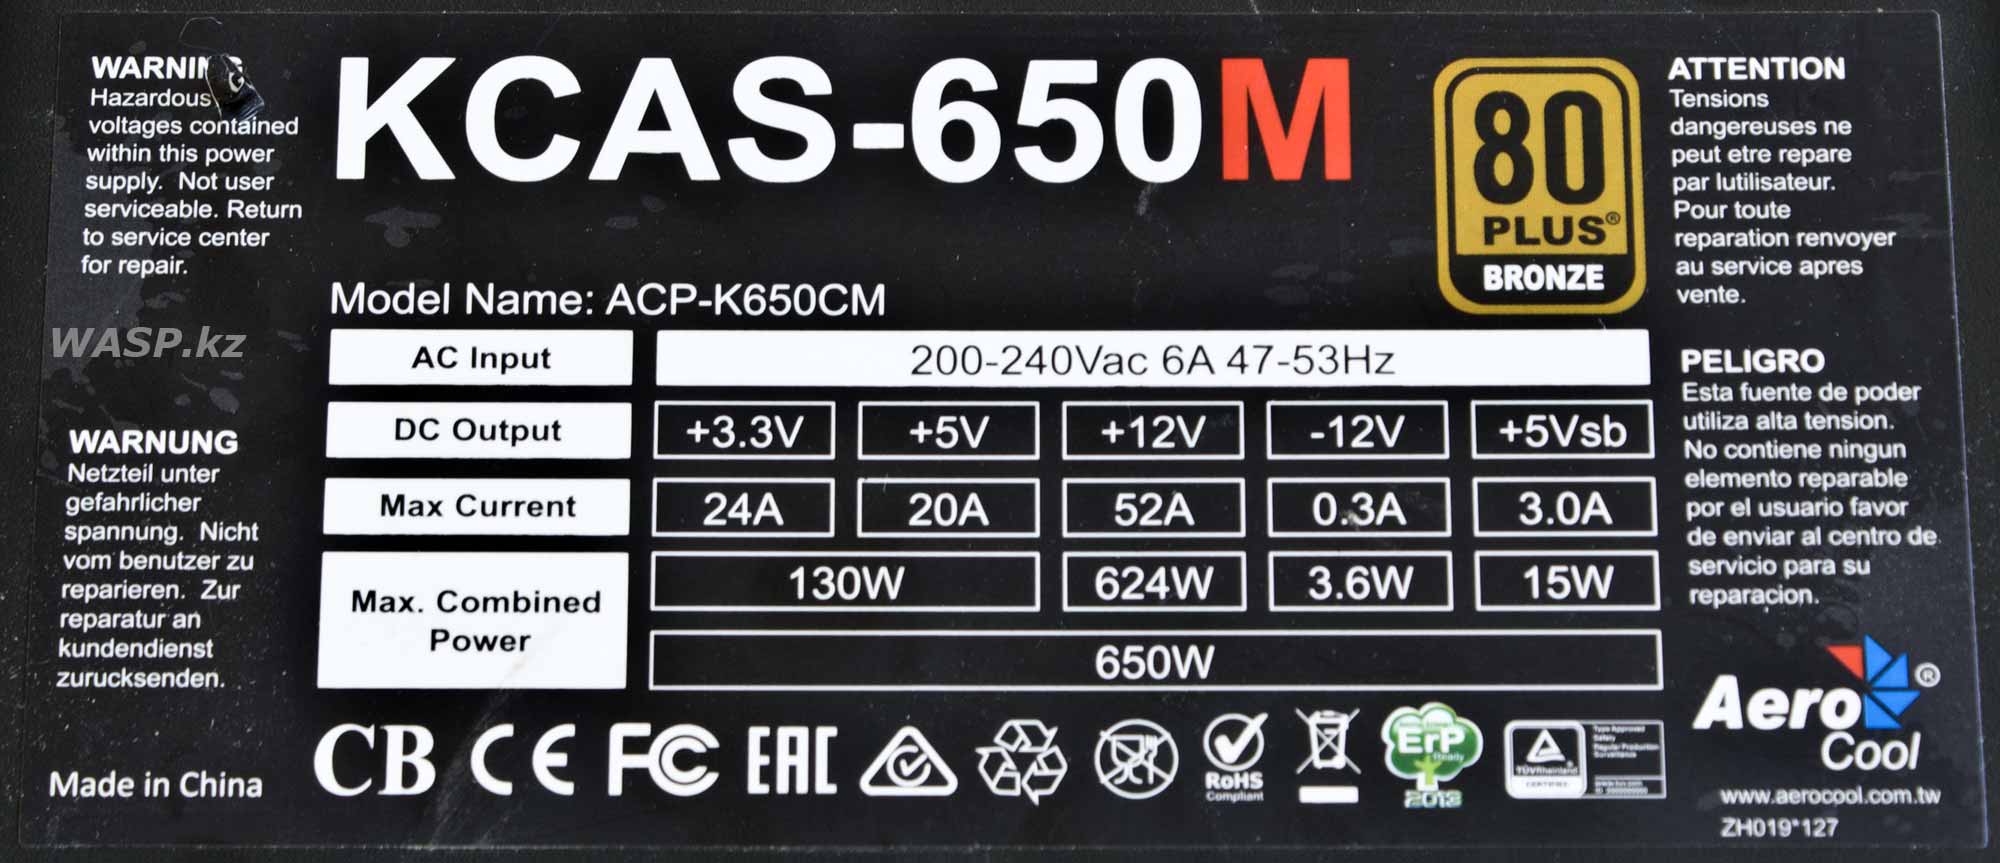 Aerocool KCAS-650M этикетка и характеристики блока питания для ПК